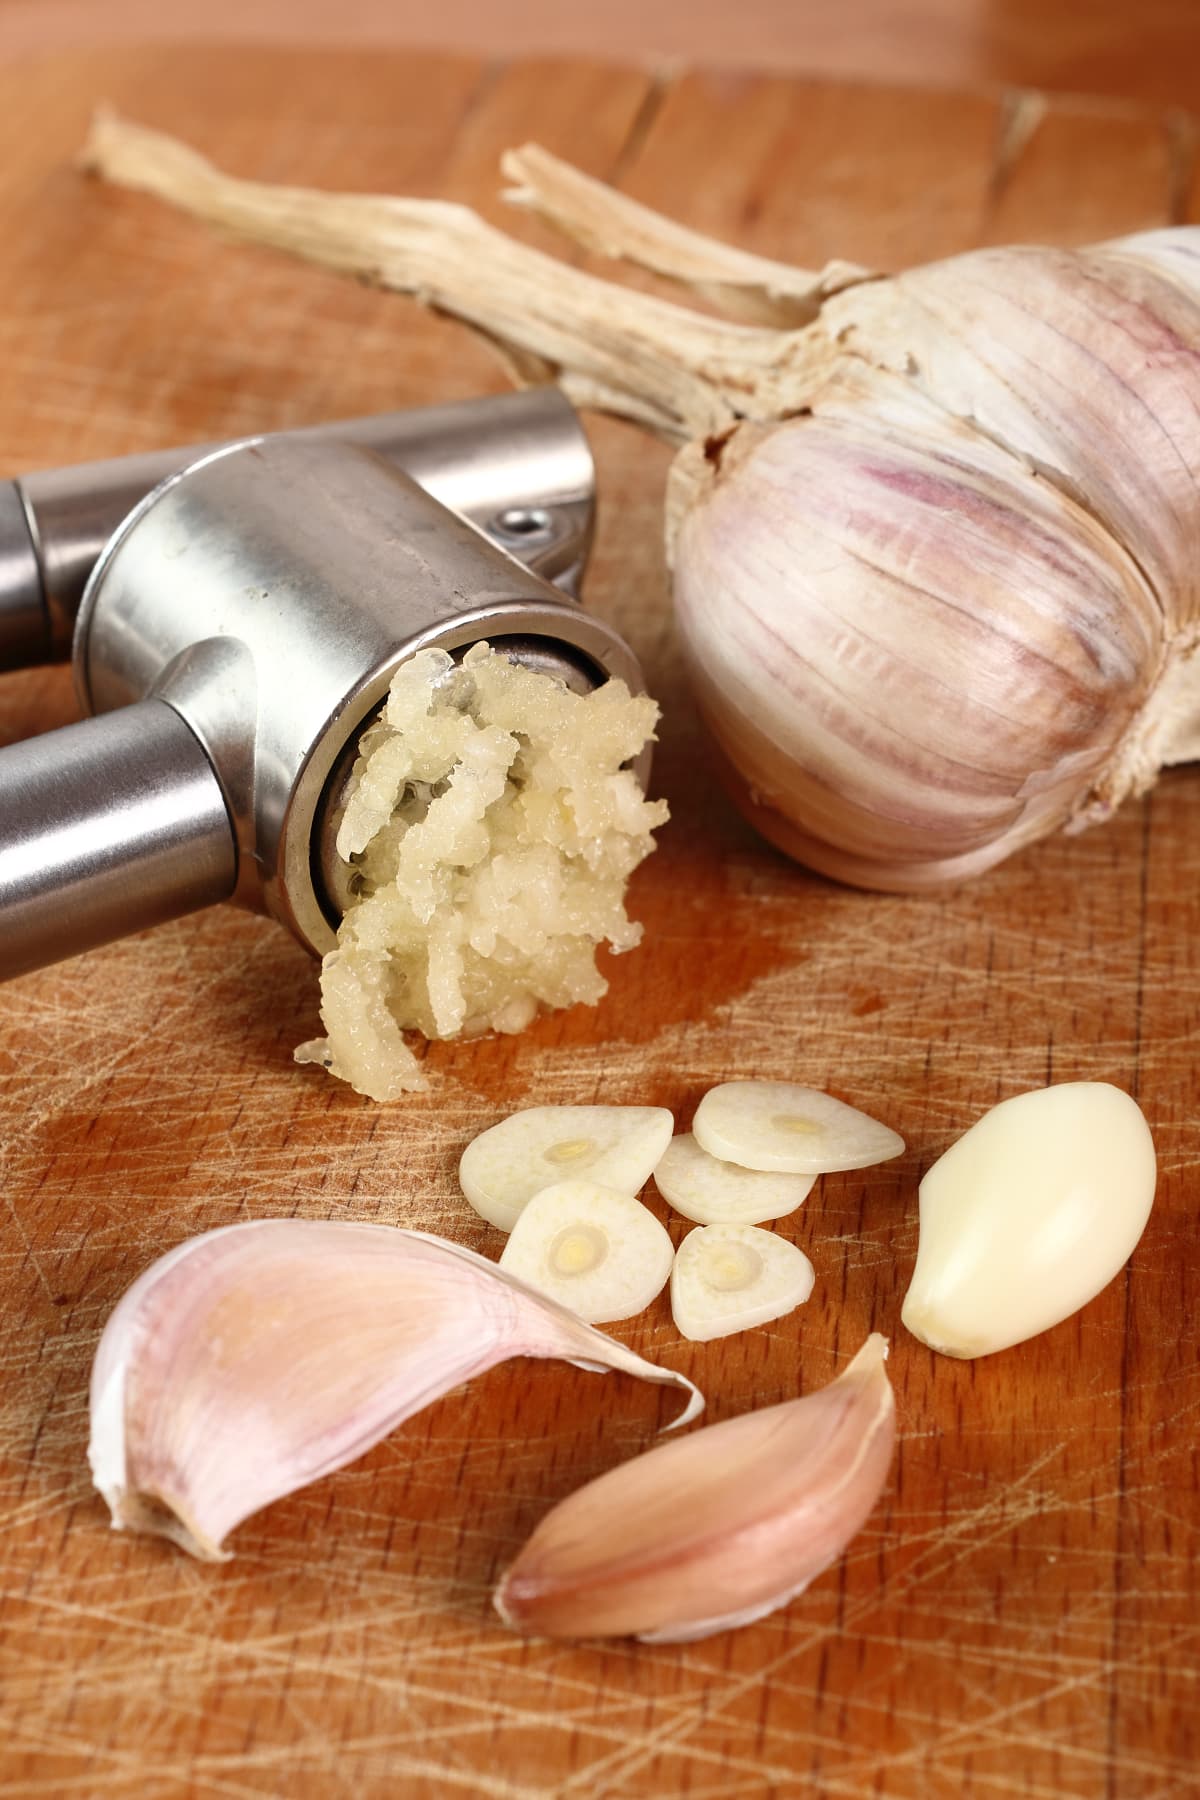 Sliced, crushed garlic and garlic press